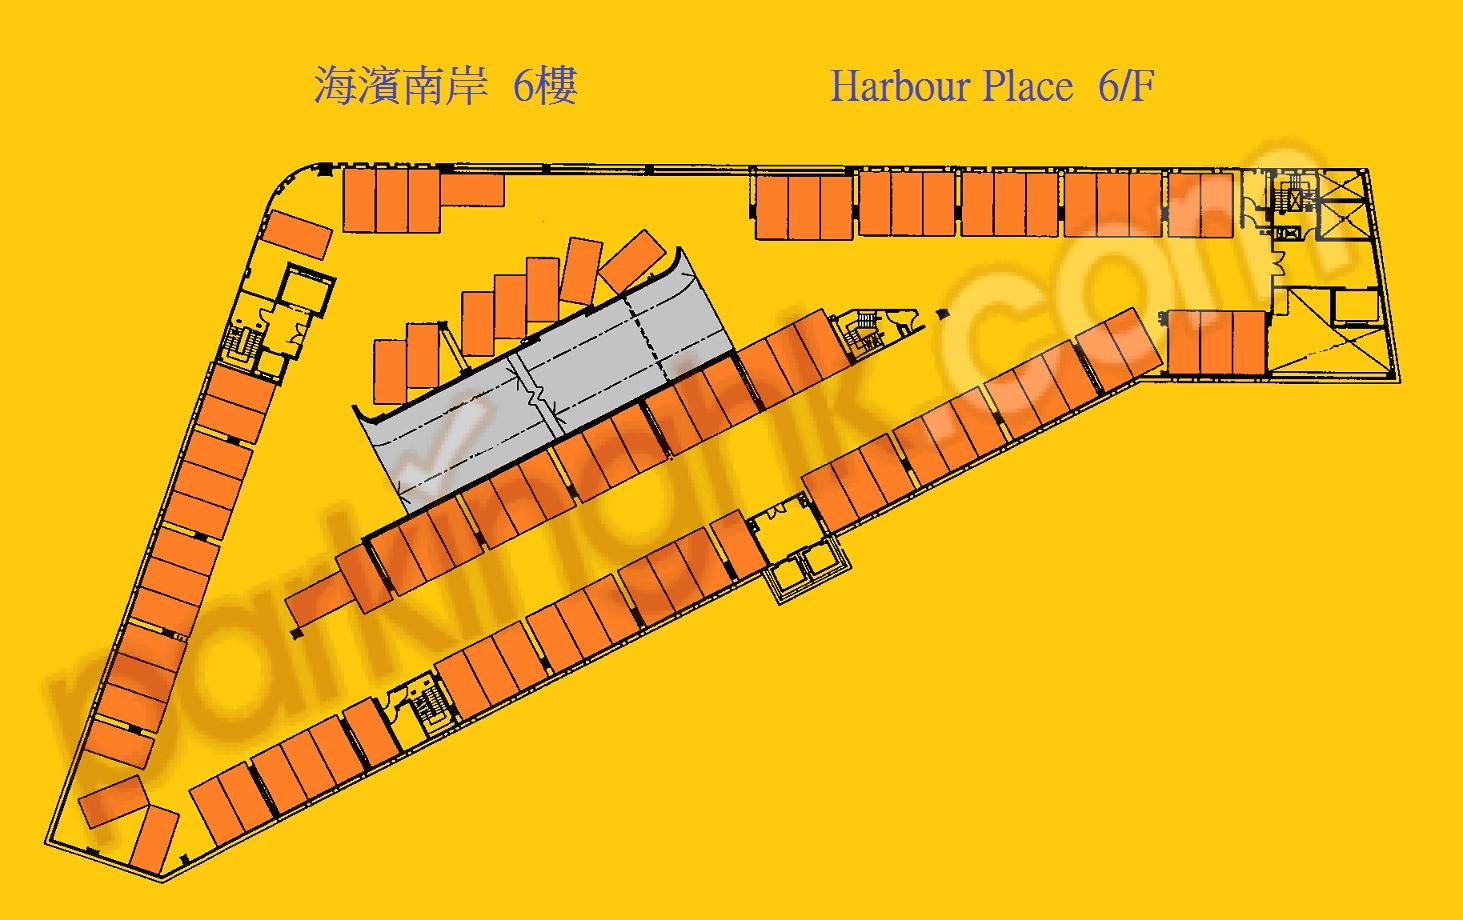  Yau Yat Chuen Carpark  Parc Oasis Road  Parc Oasis Site B  Floor plan 香港車位.com ParkingHK.com